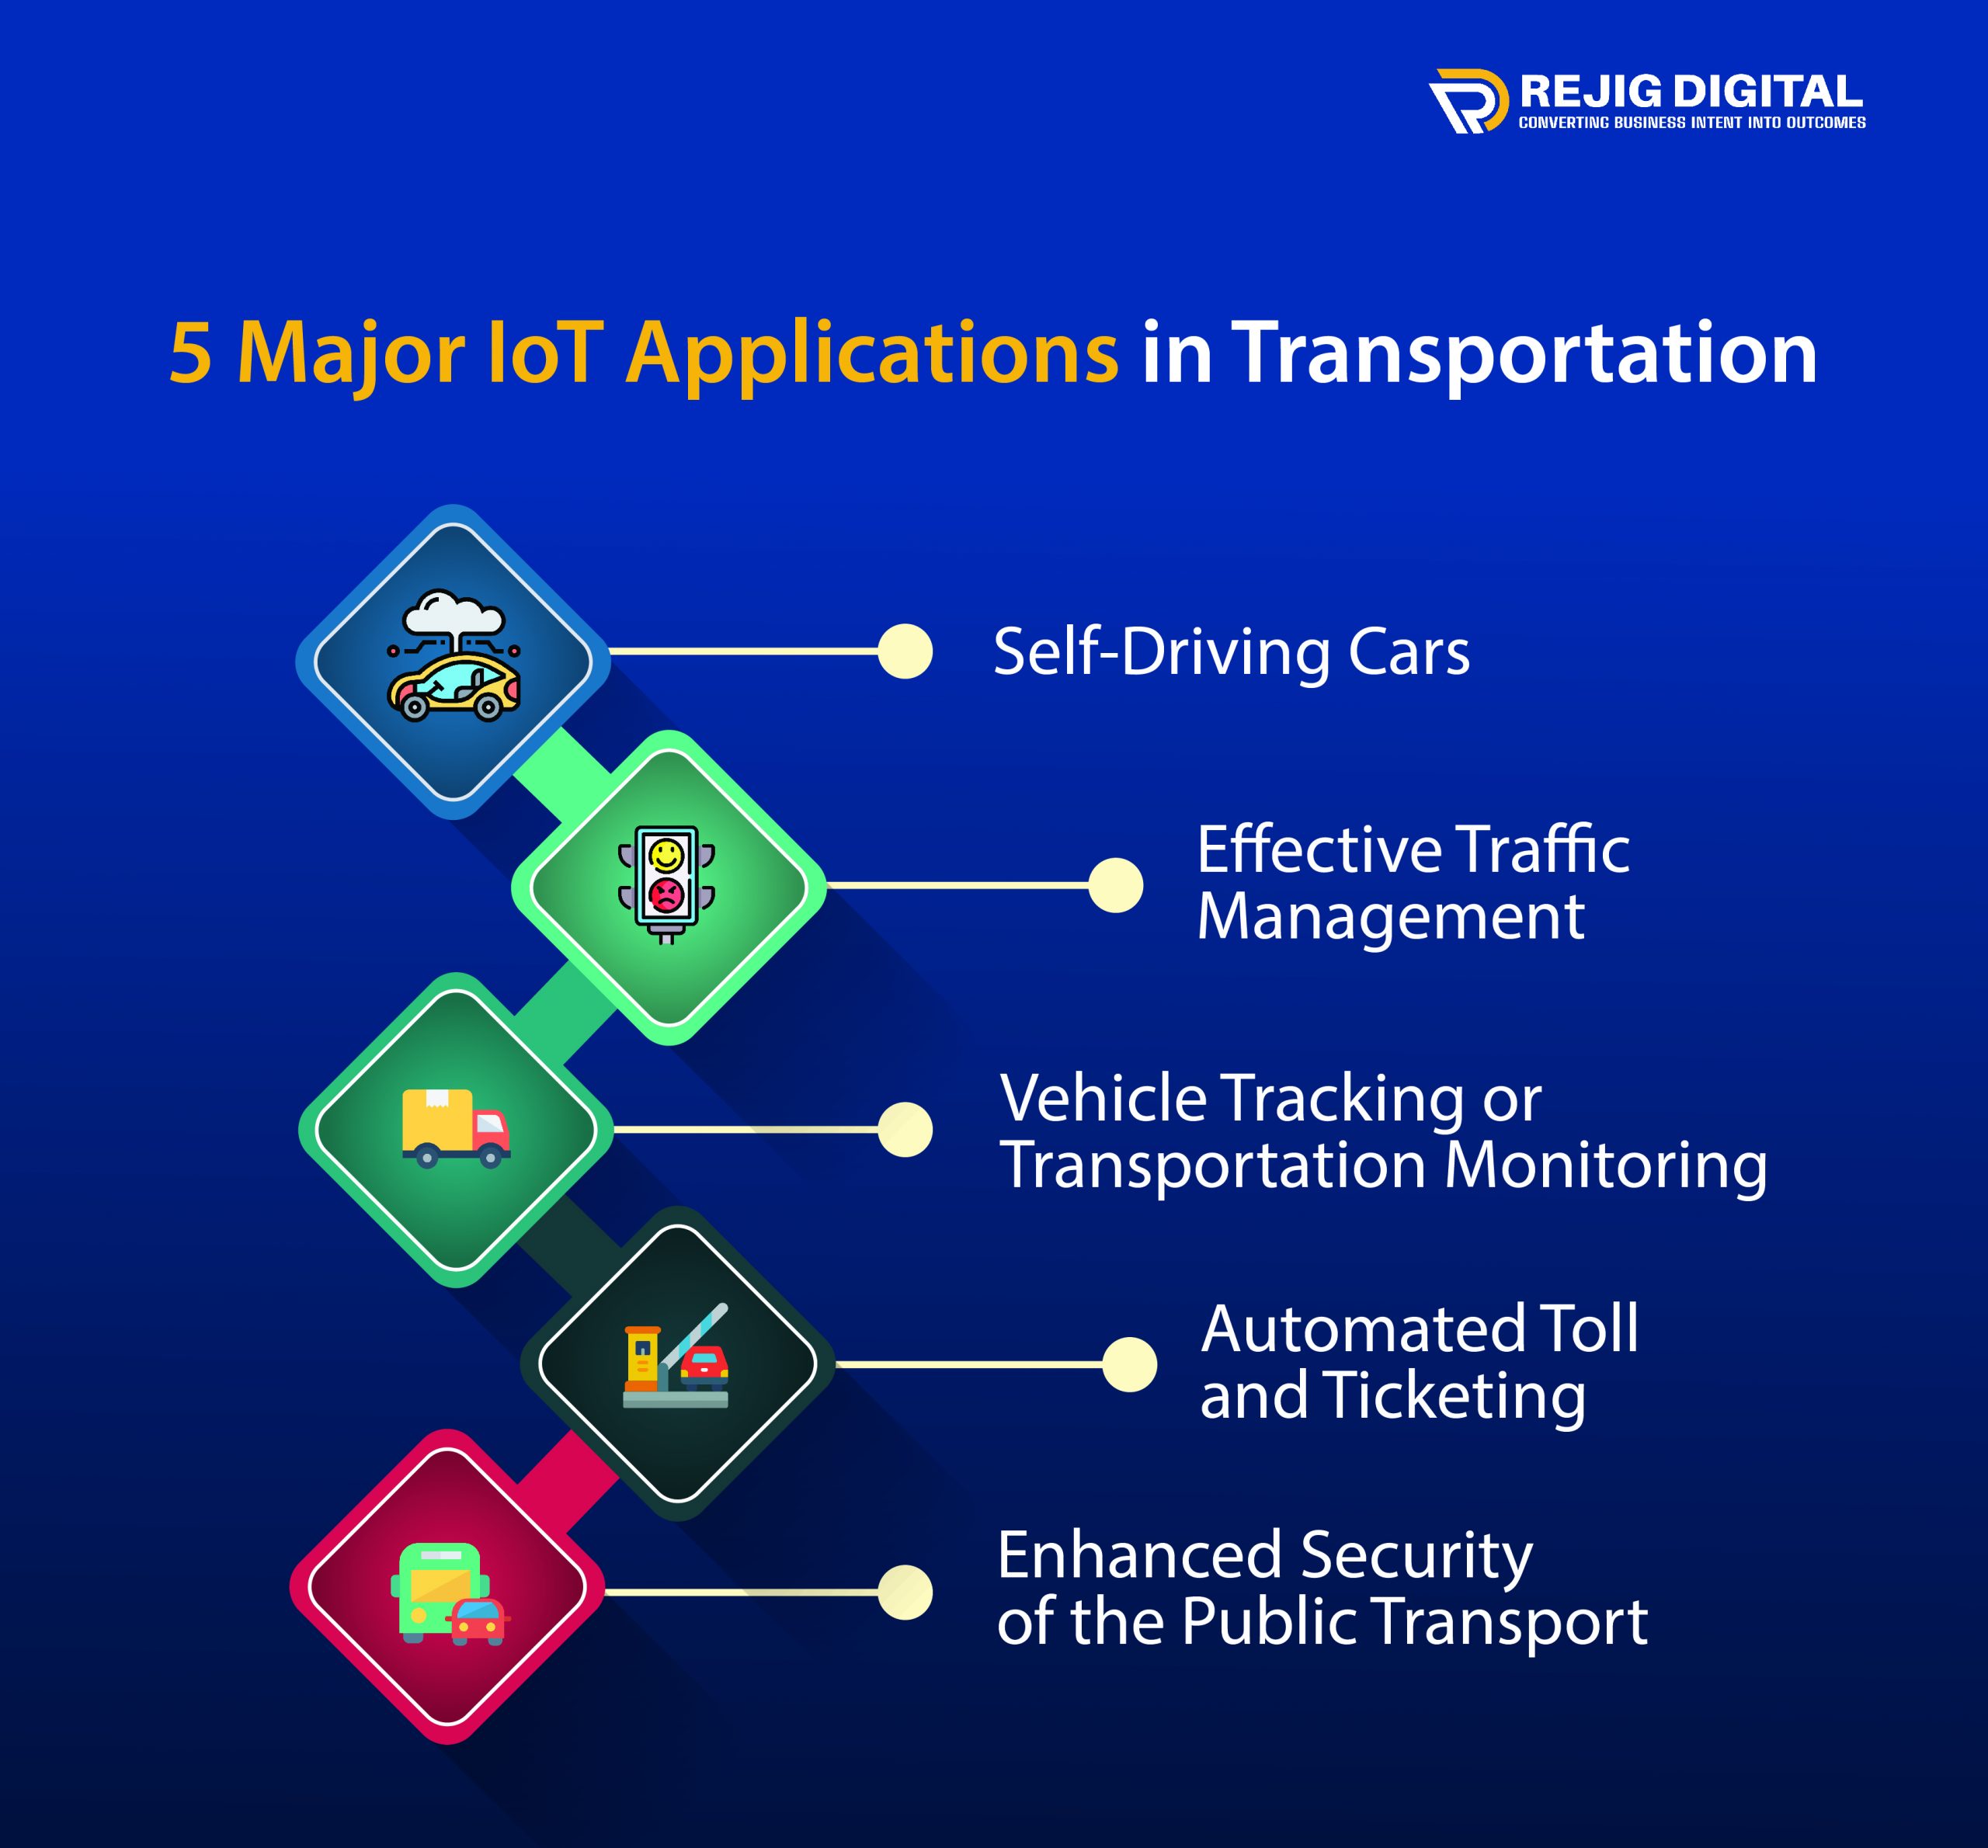 5 Major IoT Applications in Transportation